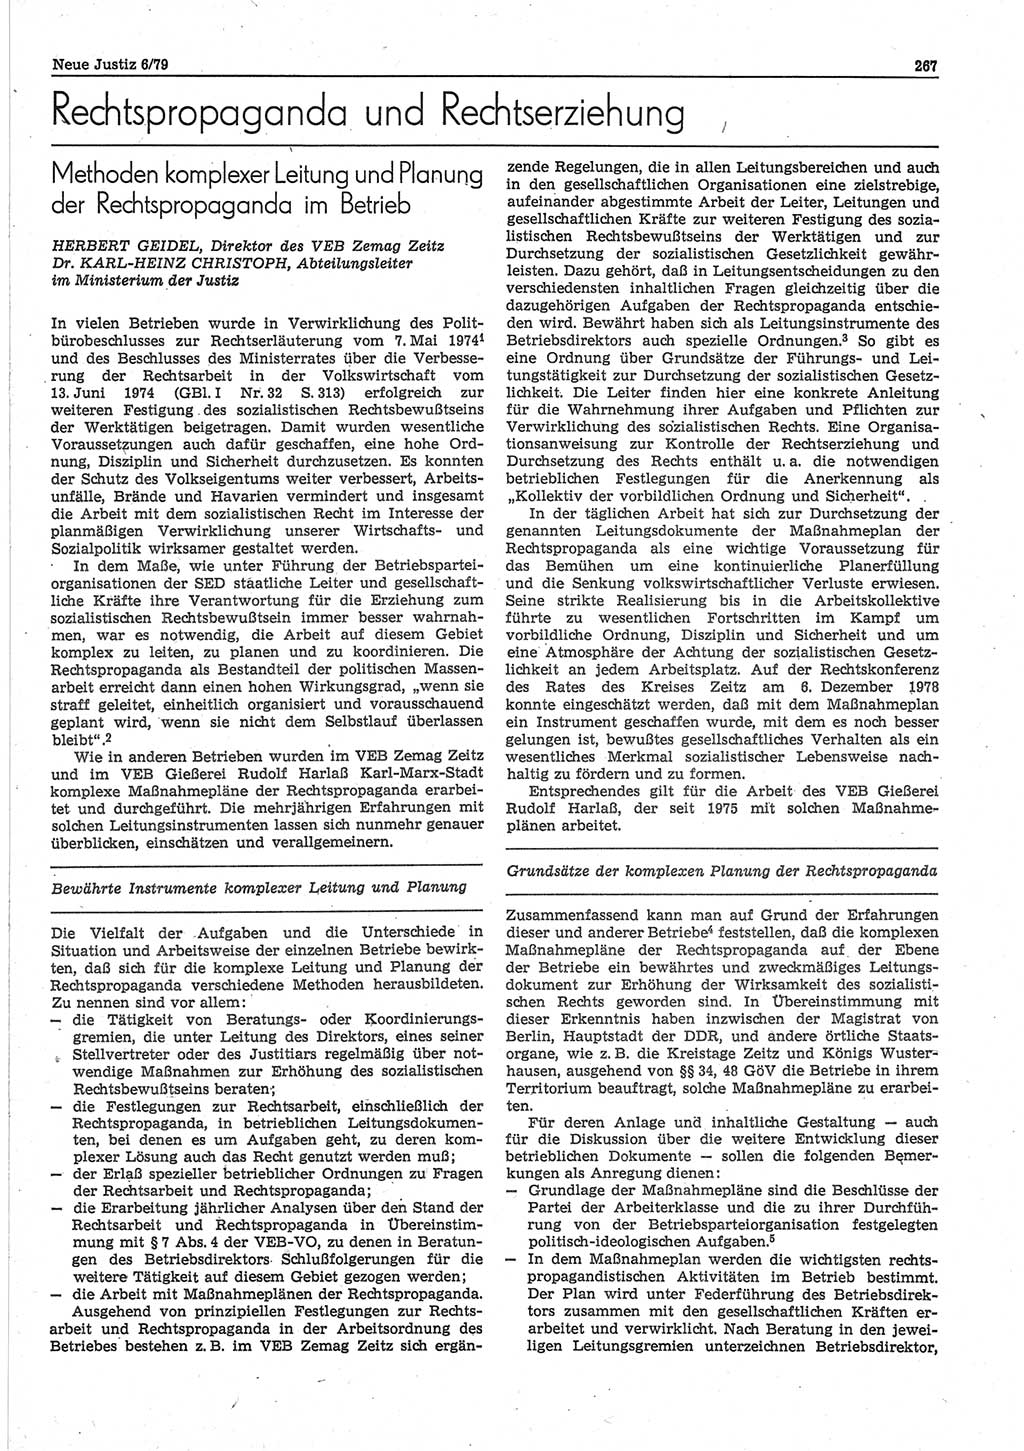 Neue Justiz (NJ), Zeitschrift für sozialistisches Recht und Gesetzlichkeit [Deutsche Demokratische Republik (DDR)], 33. Jahrgang 1979, Seite 267 (NJ DDR 1979, S. 267)